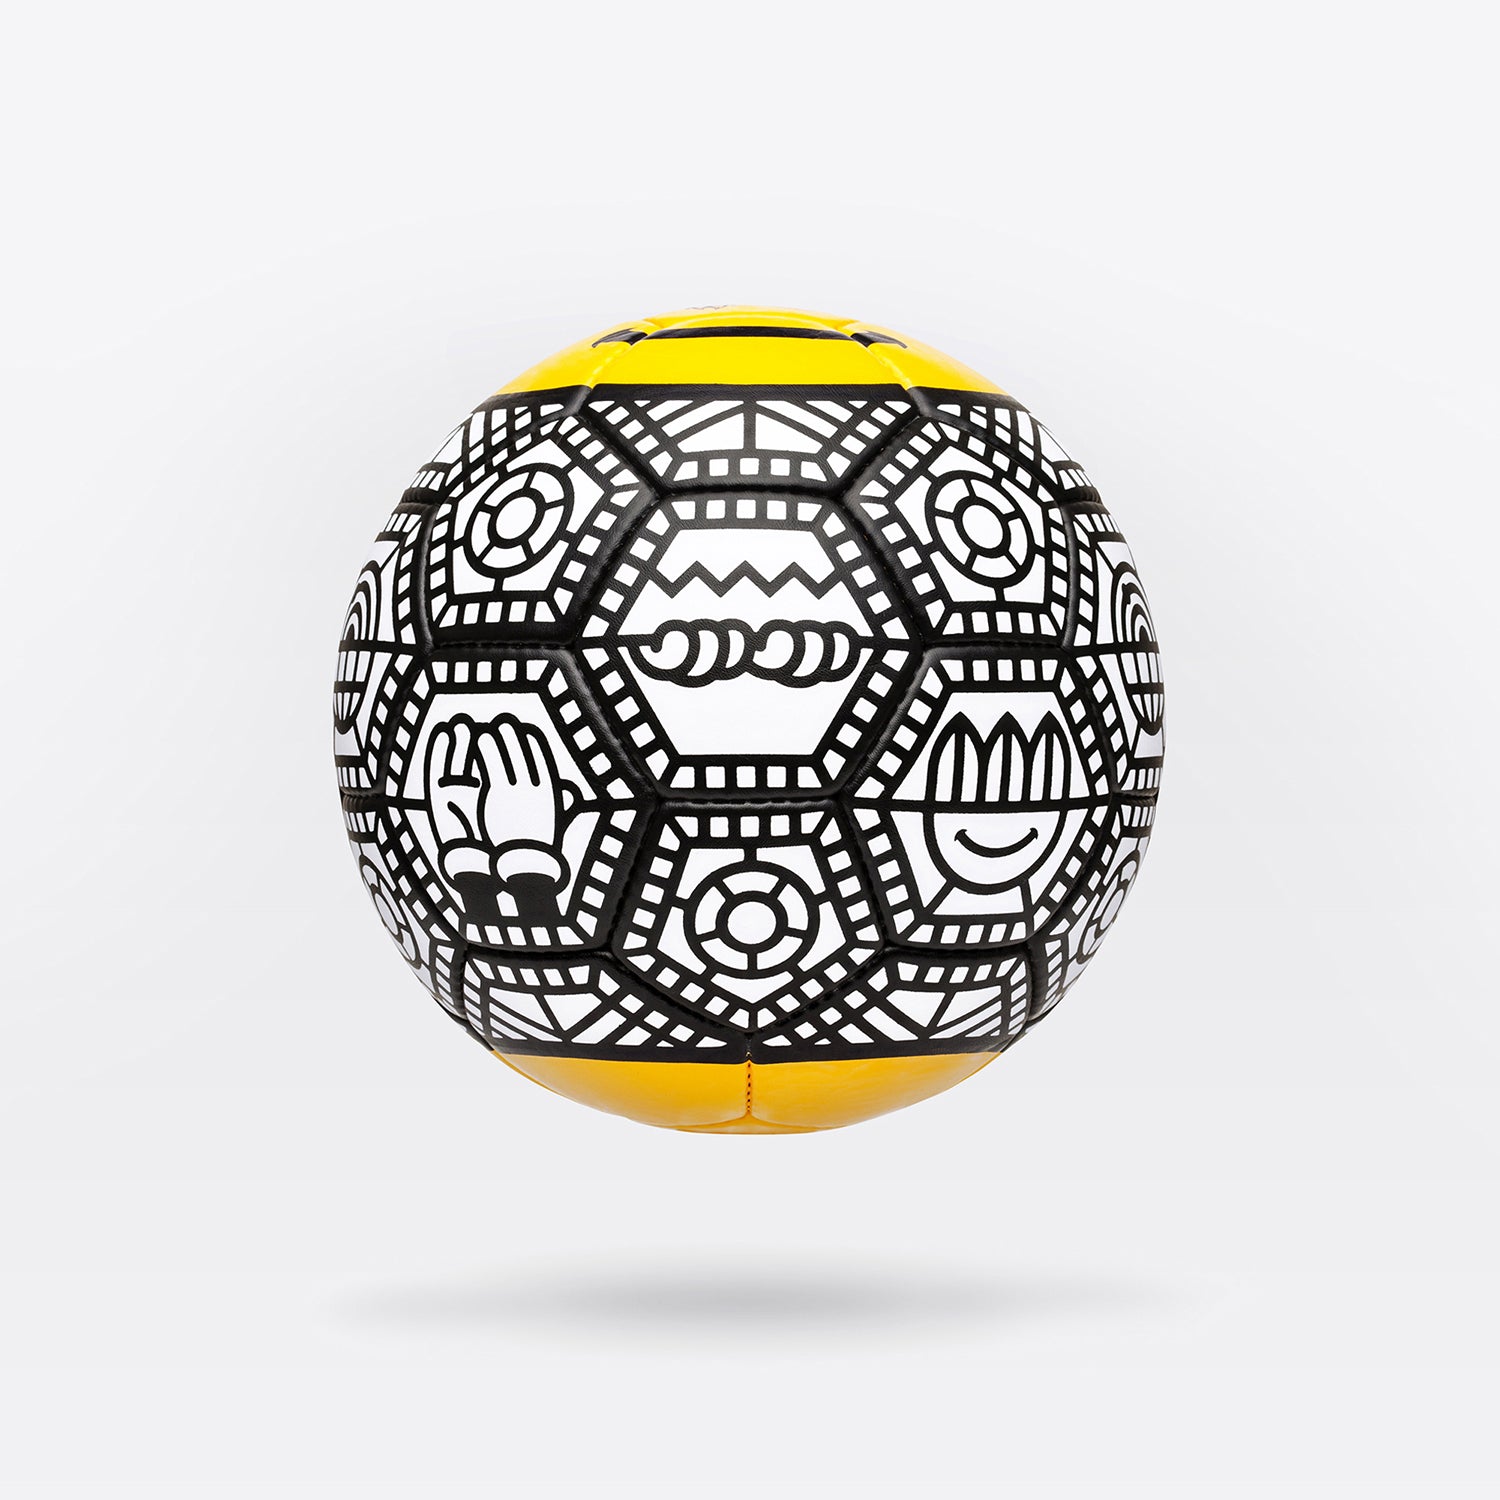 Ball #2 by GRAFFLEX